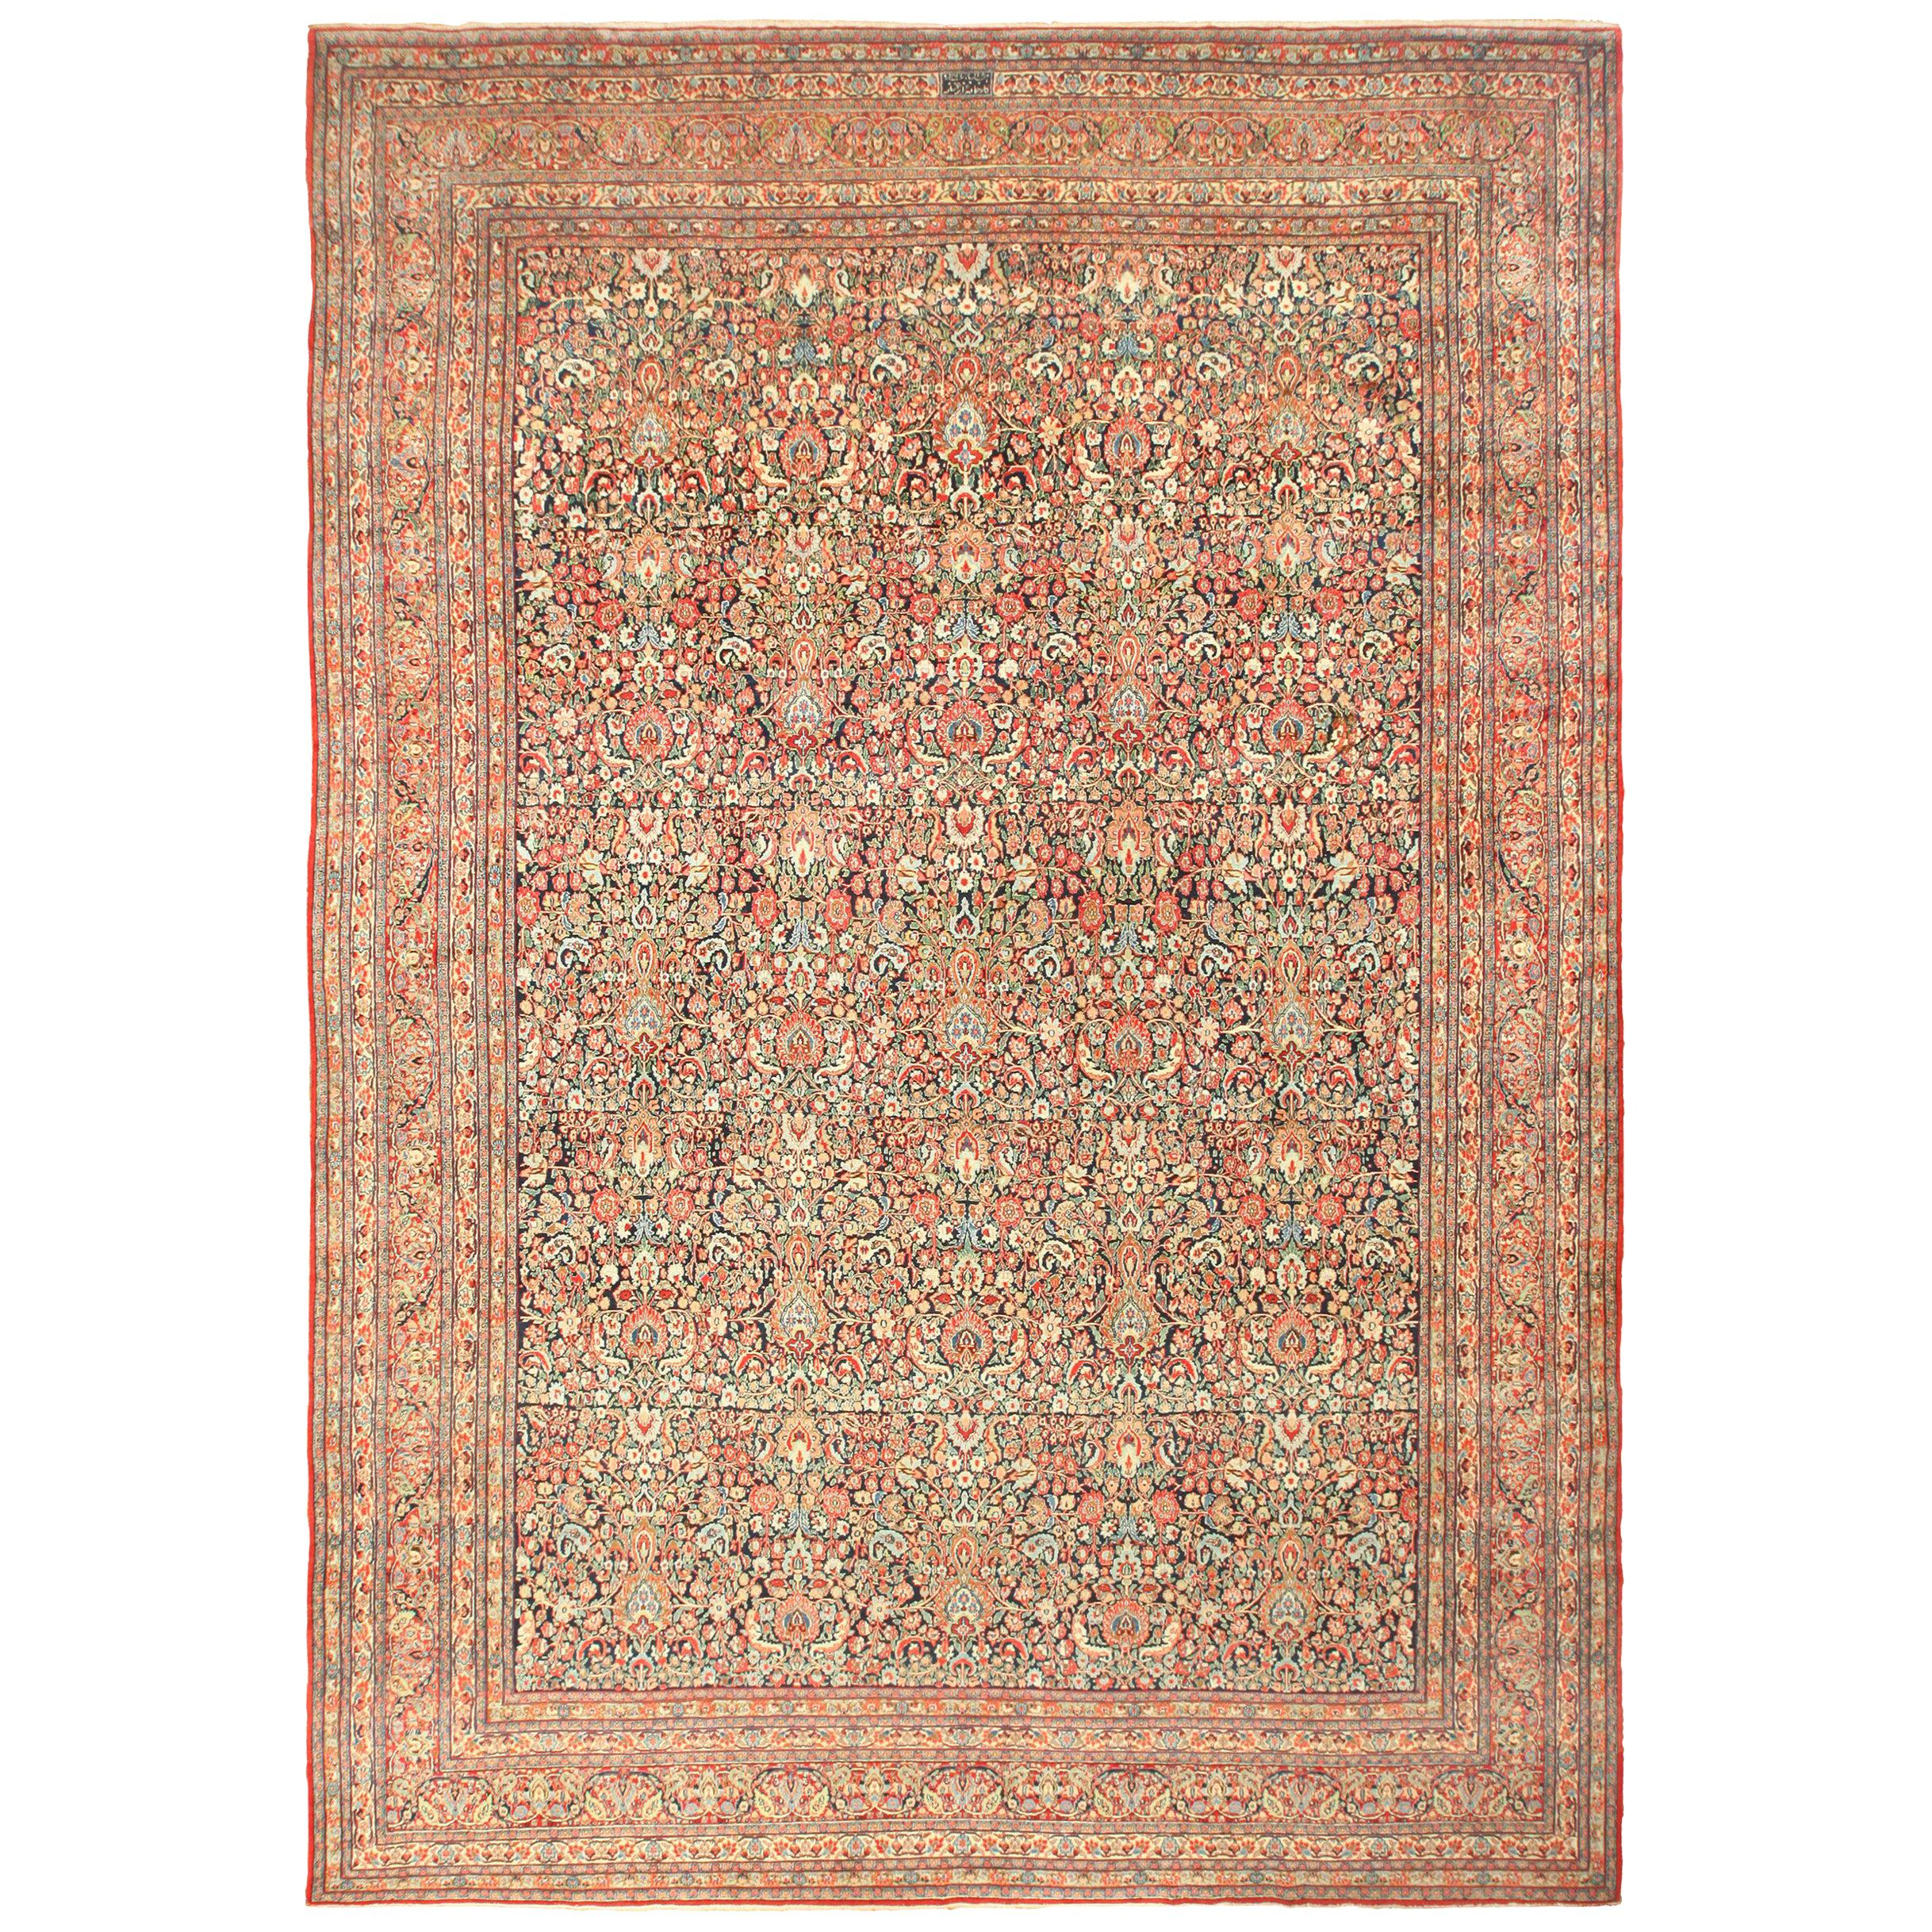 Antiker persischer Khorassan-Teppich. Größe: 13' 3" x 19' 2" 